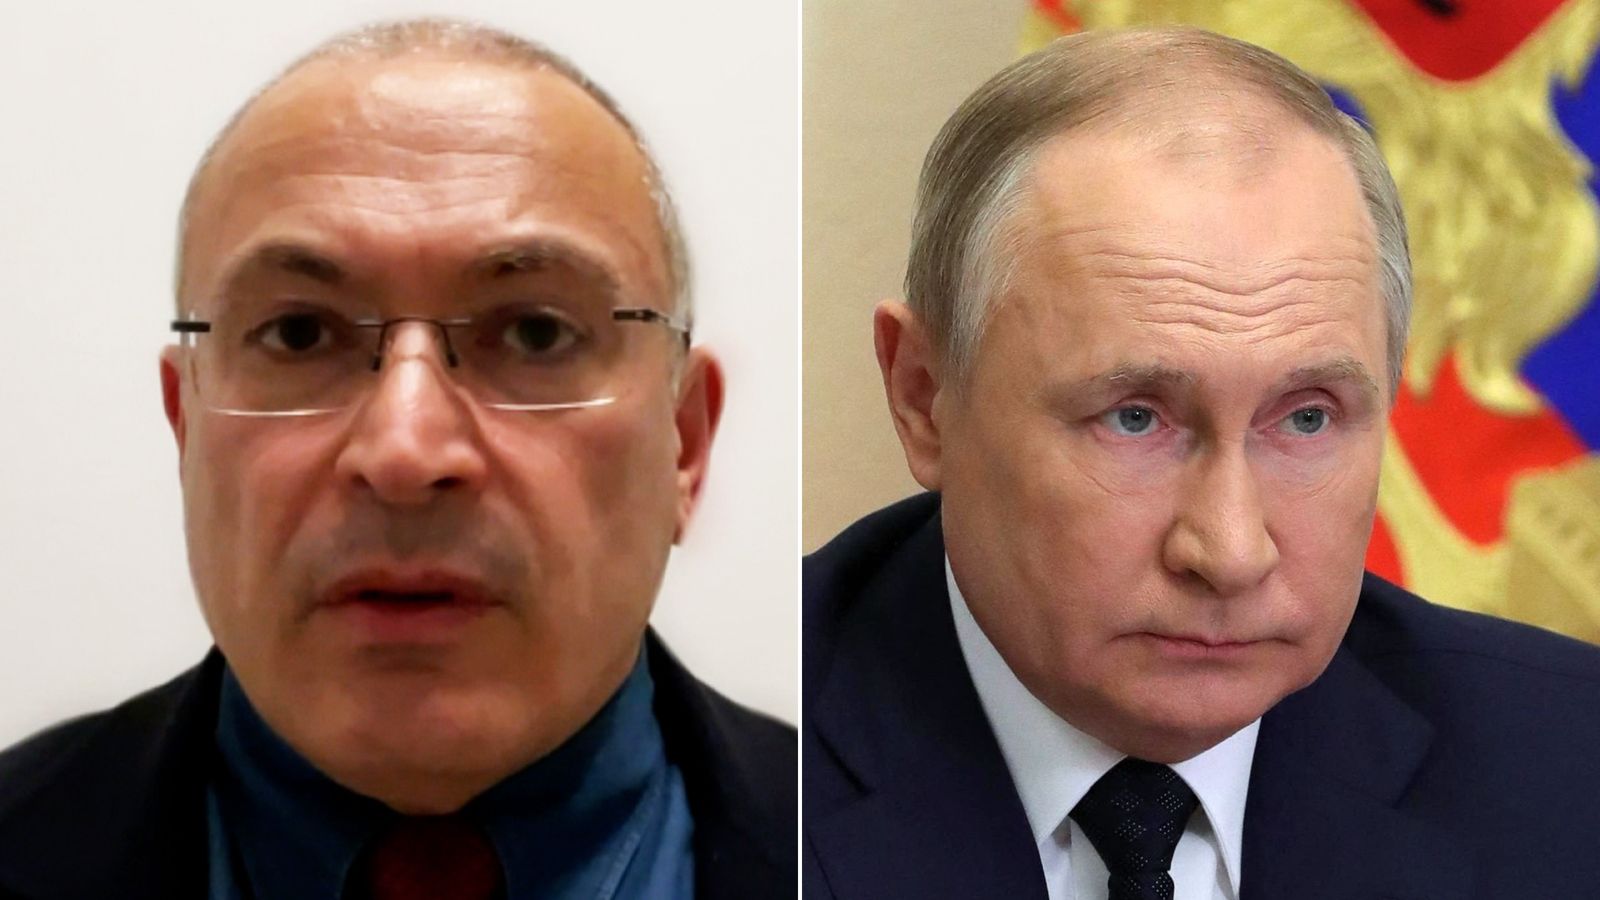 Khodorkovsky: “Sou pessimista; Putin pode durar 20 anos